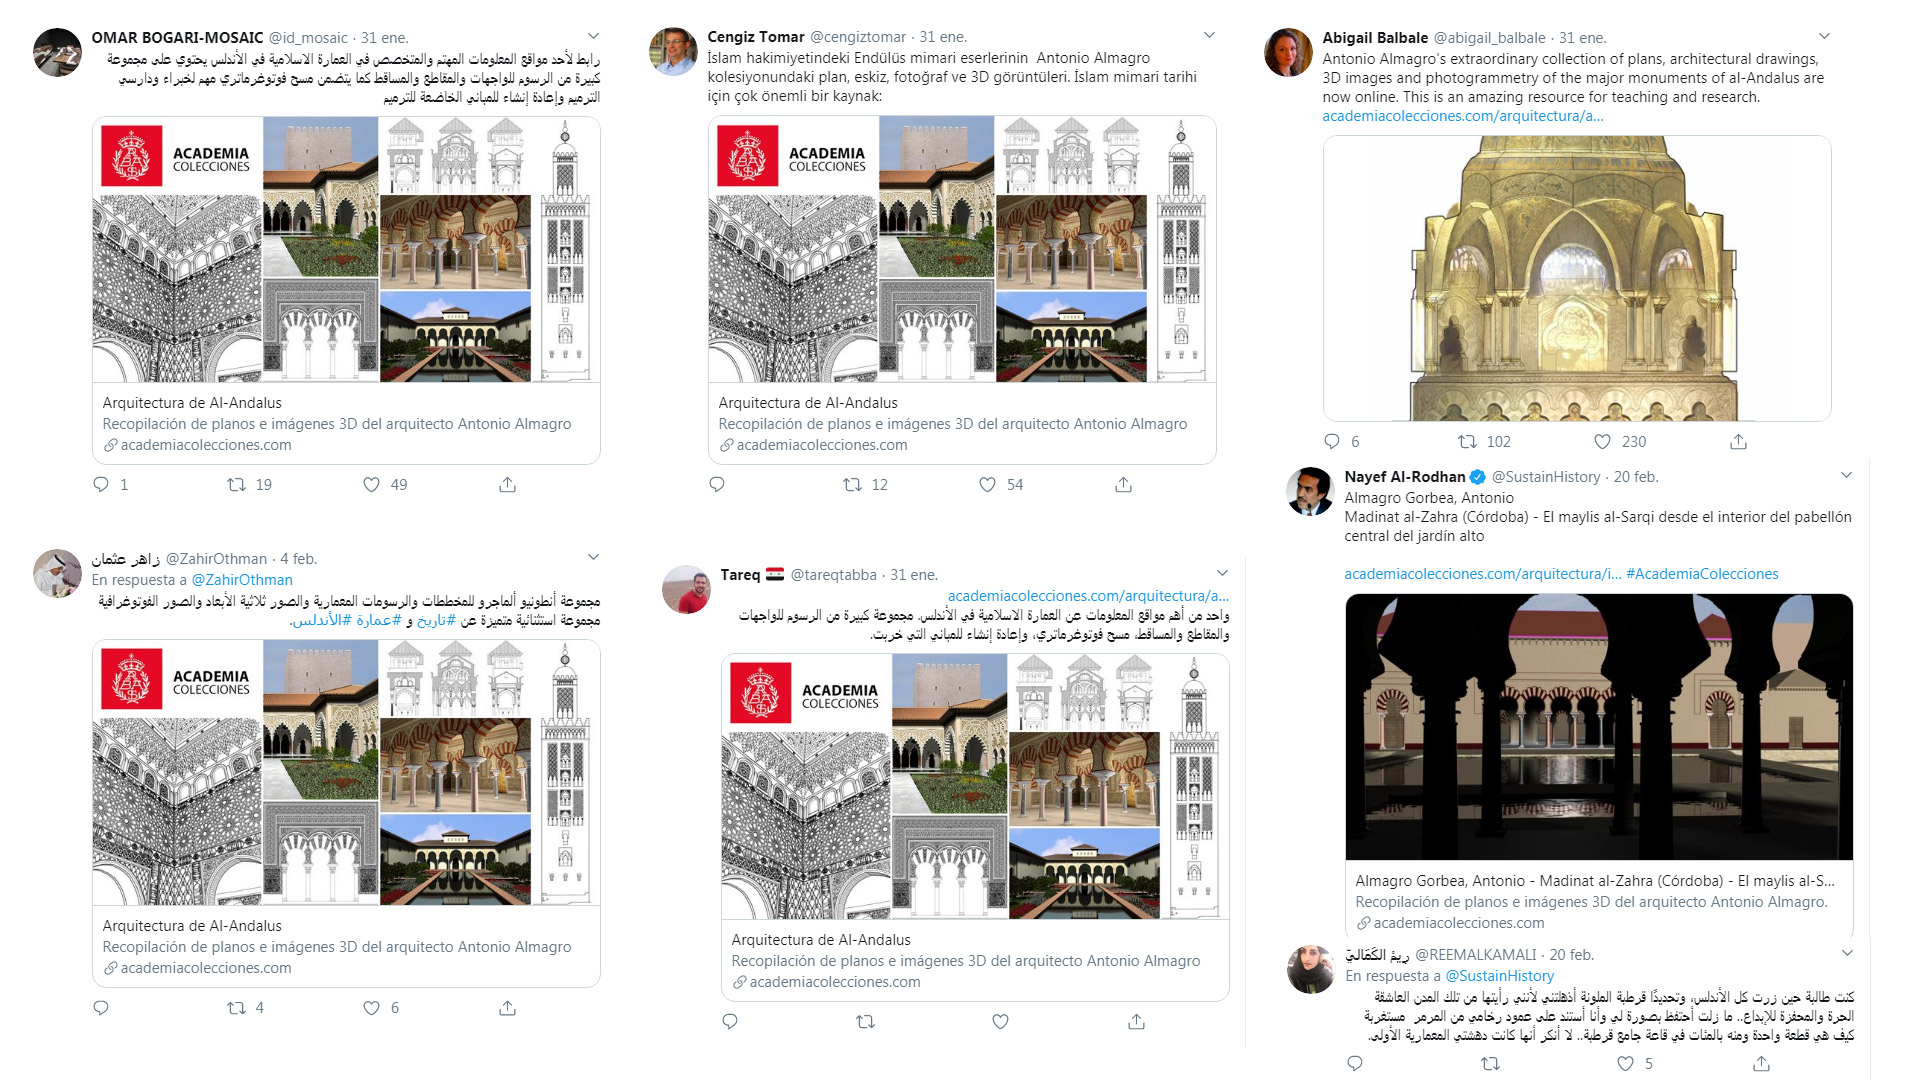 Comentarios en redes sociales sobre colección de arquitectura de Al-Andalus